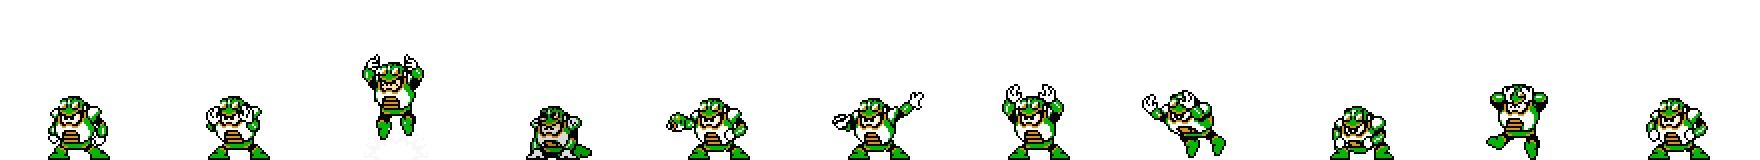 Toad Man | Base Sprite Left